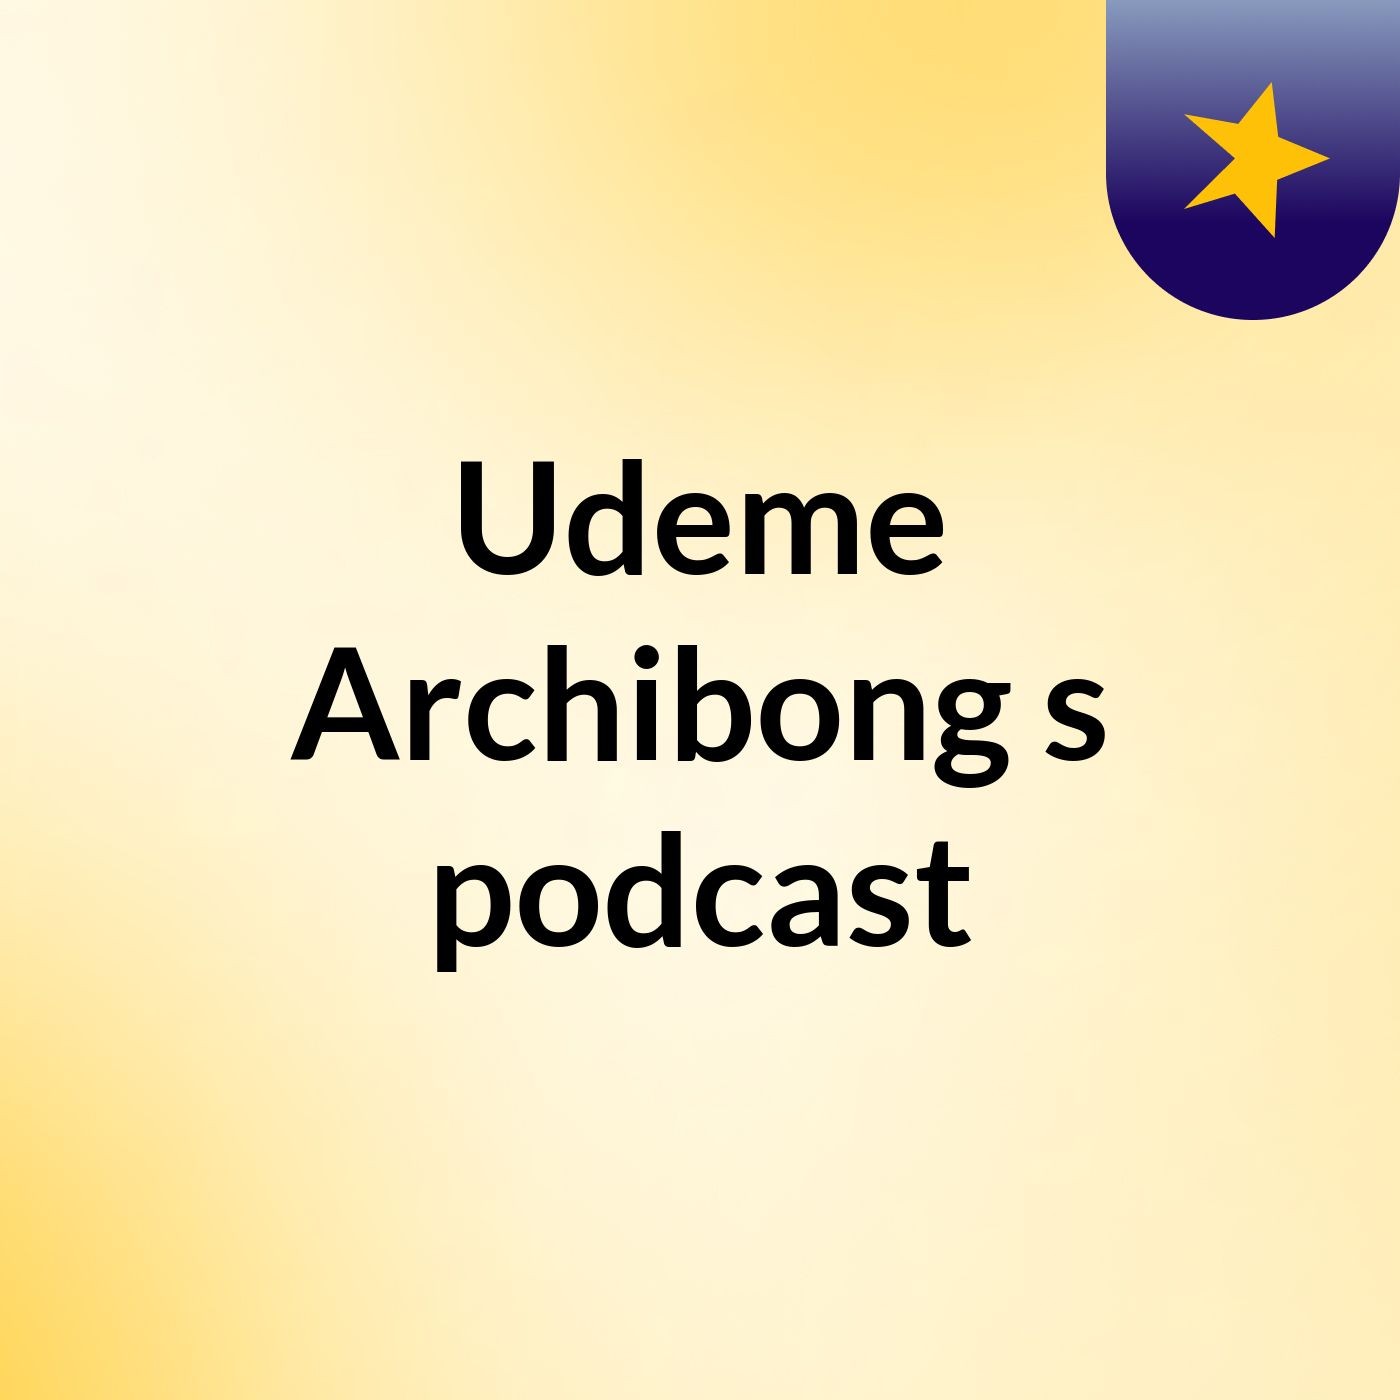 Udeme Archibong's podcast